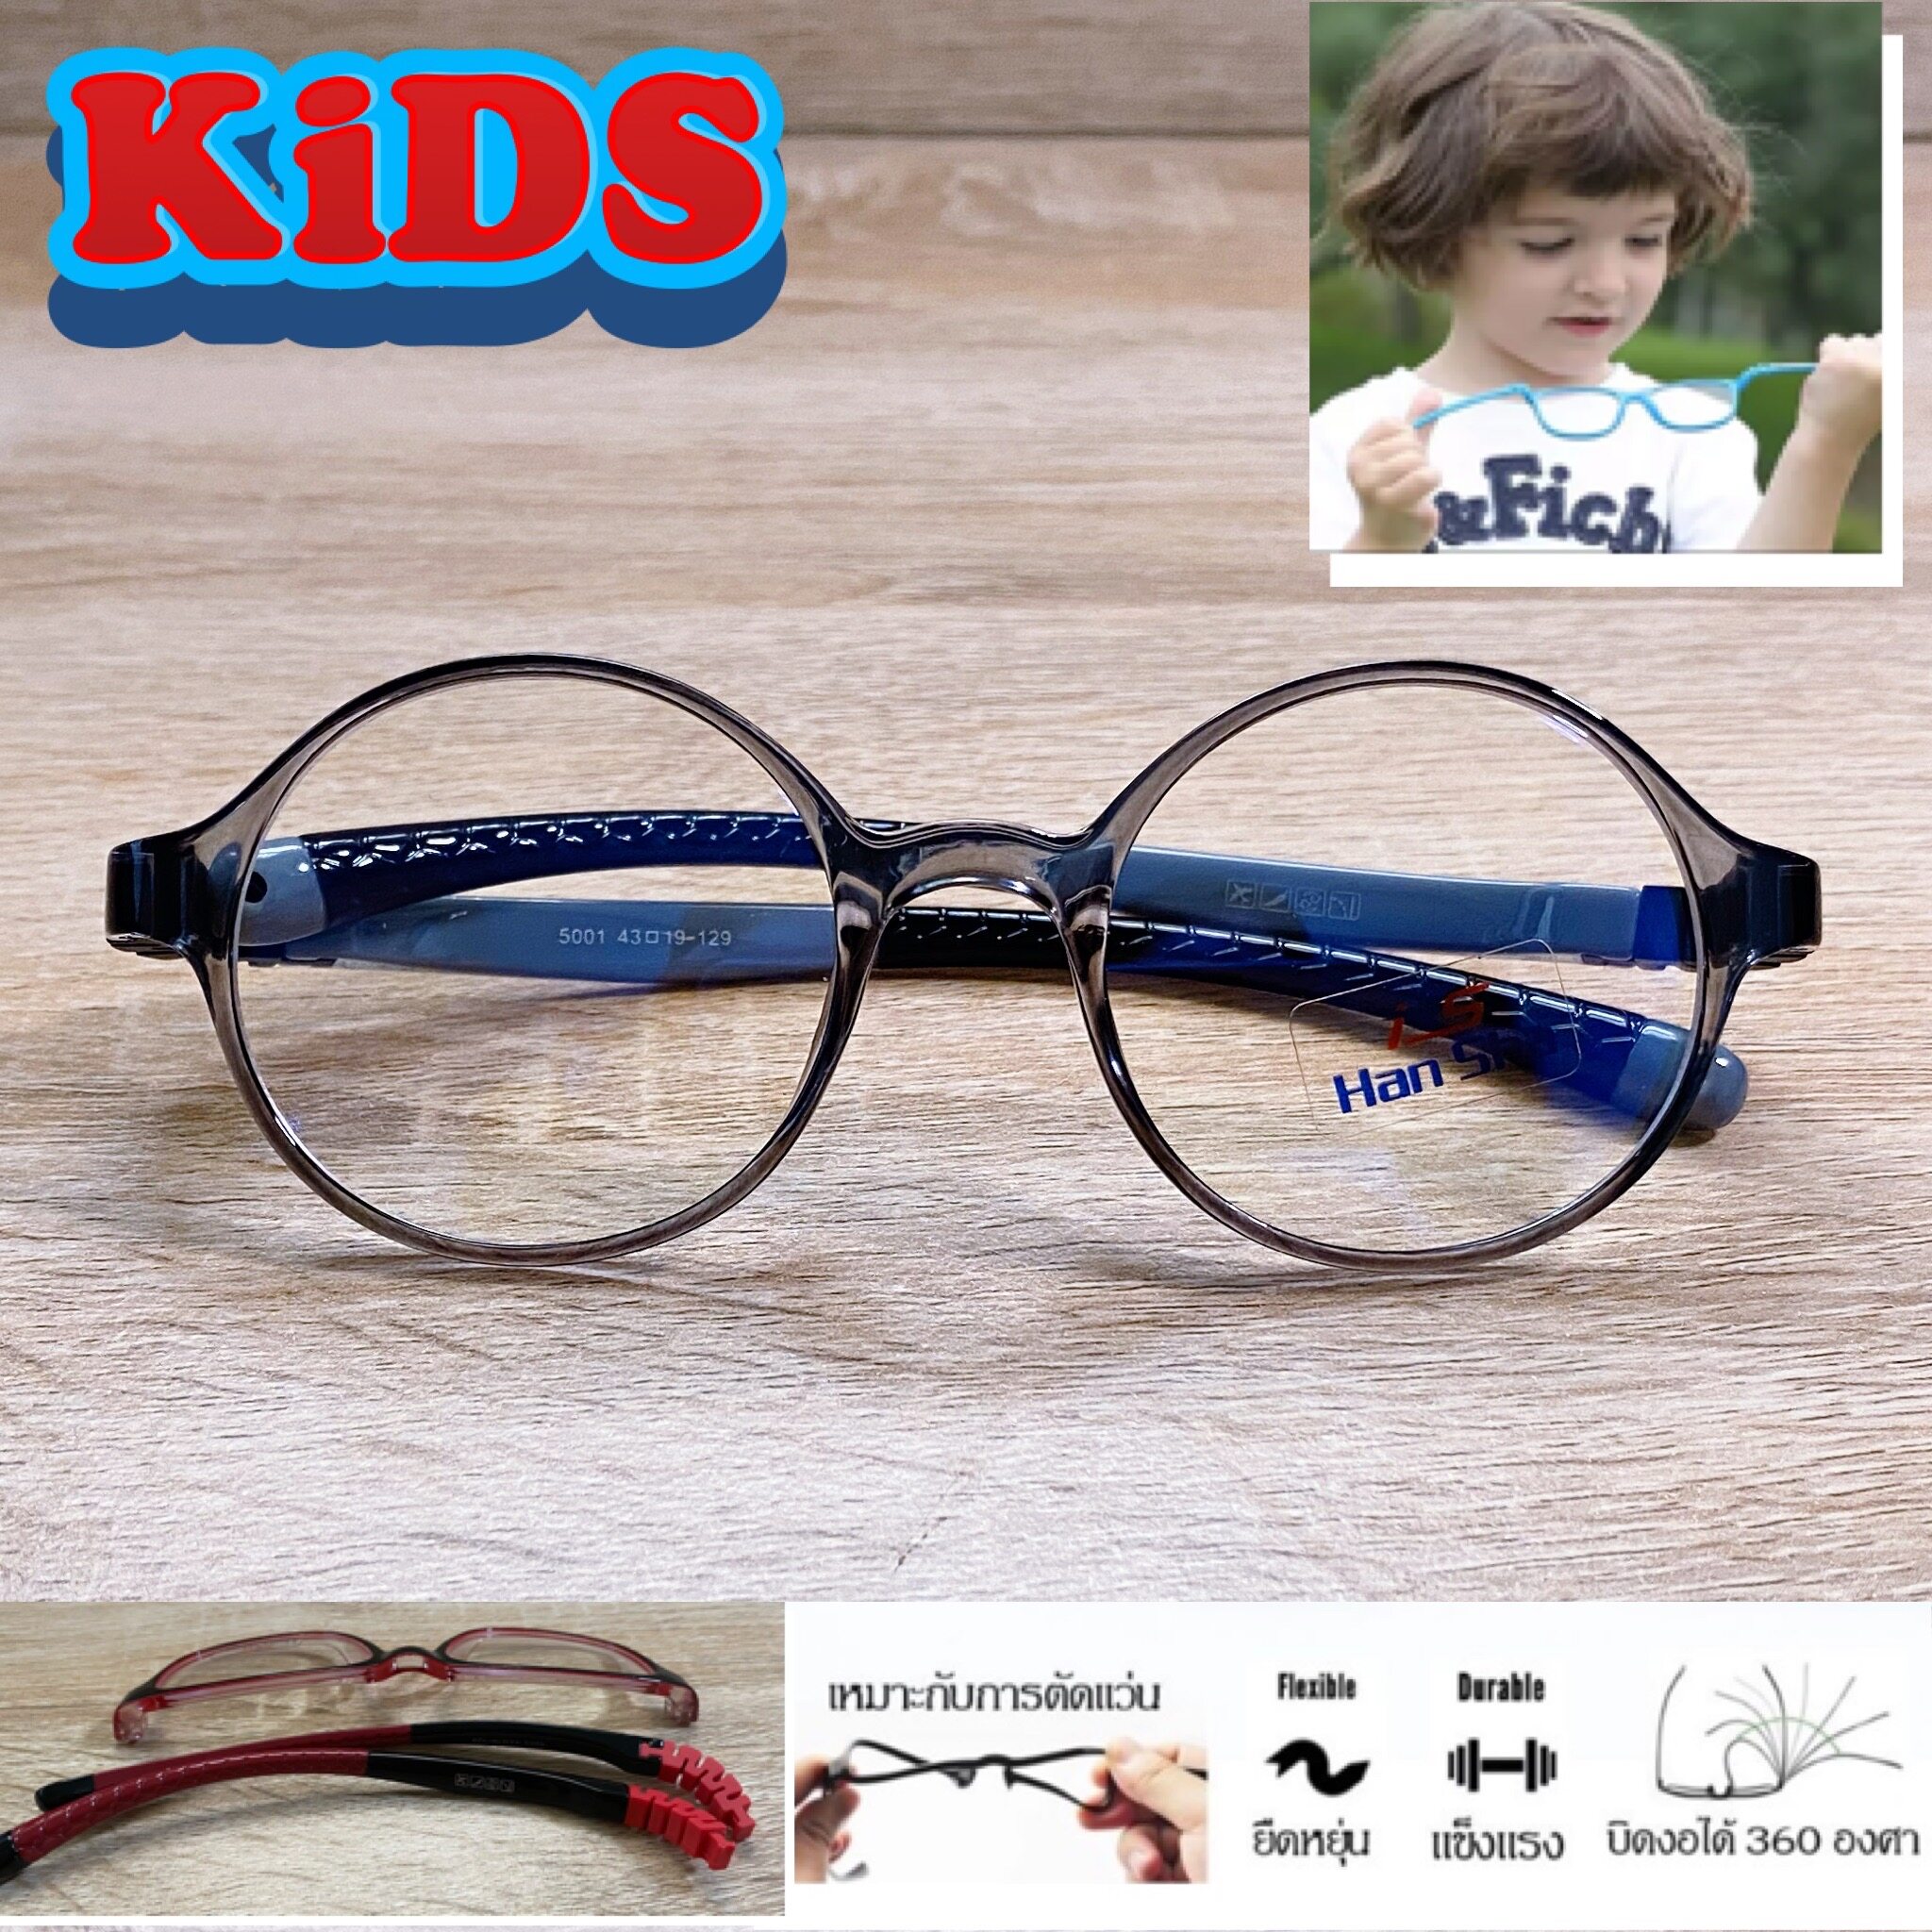 แว่นตาเด็ก กรอบแว่นตาเด็ก สำหรับตัดเลนส์ แว่นตา Han Sha รุ่น 5001 สีเทา ขาไม่ใช้น็อต ยืดหยุ่น ถอดขาเปลี่ยนได้ วัสดุ TR 90 เบา ไม่แตกหัก